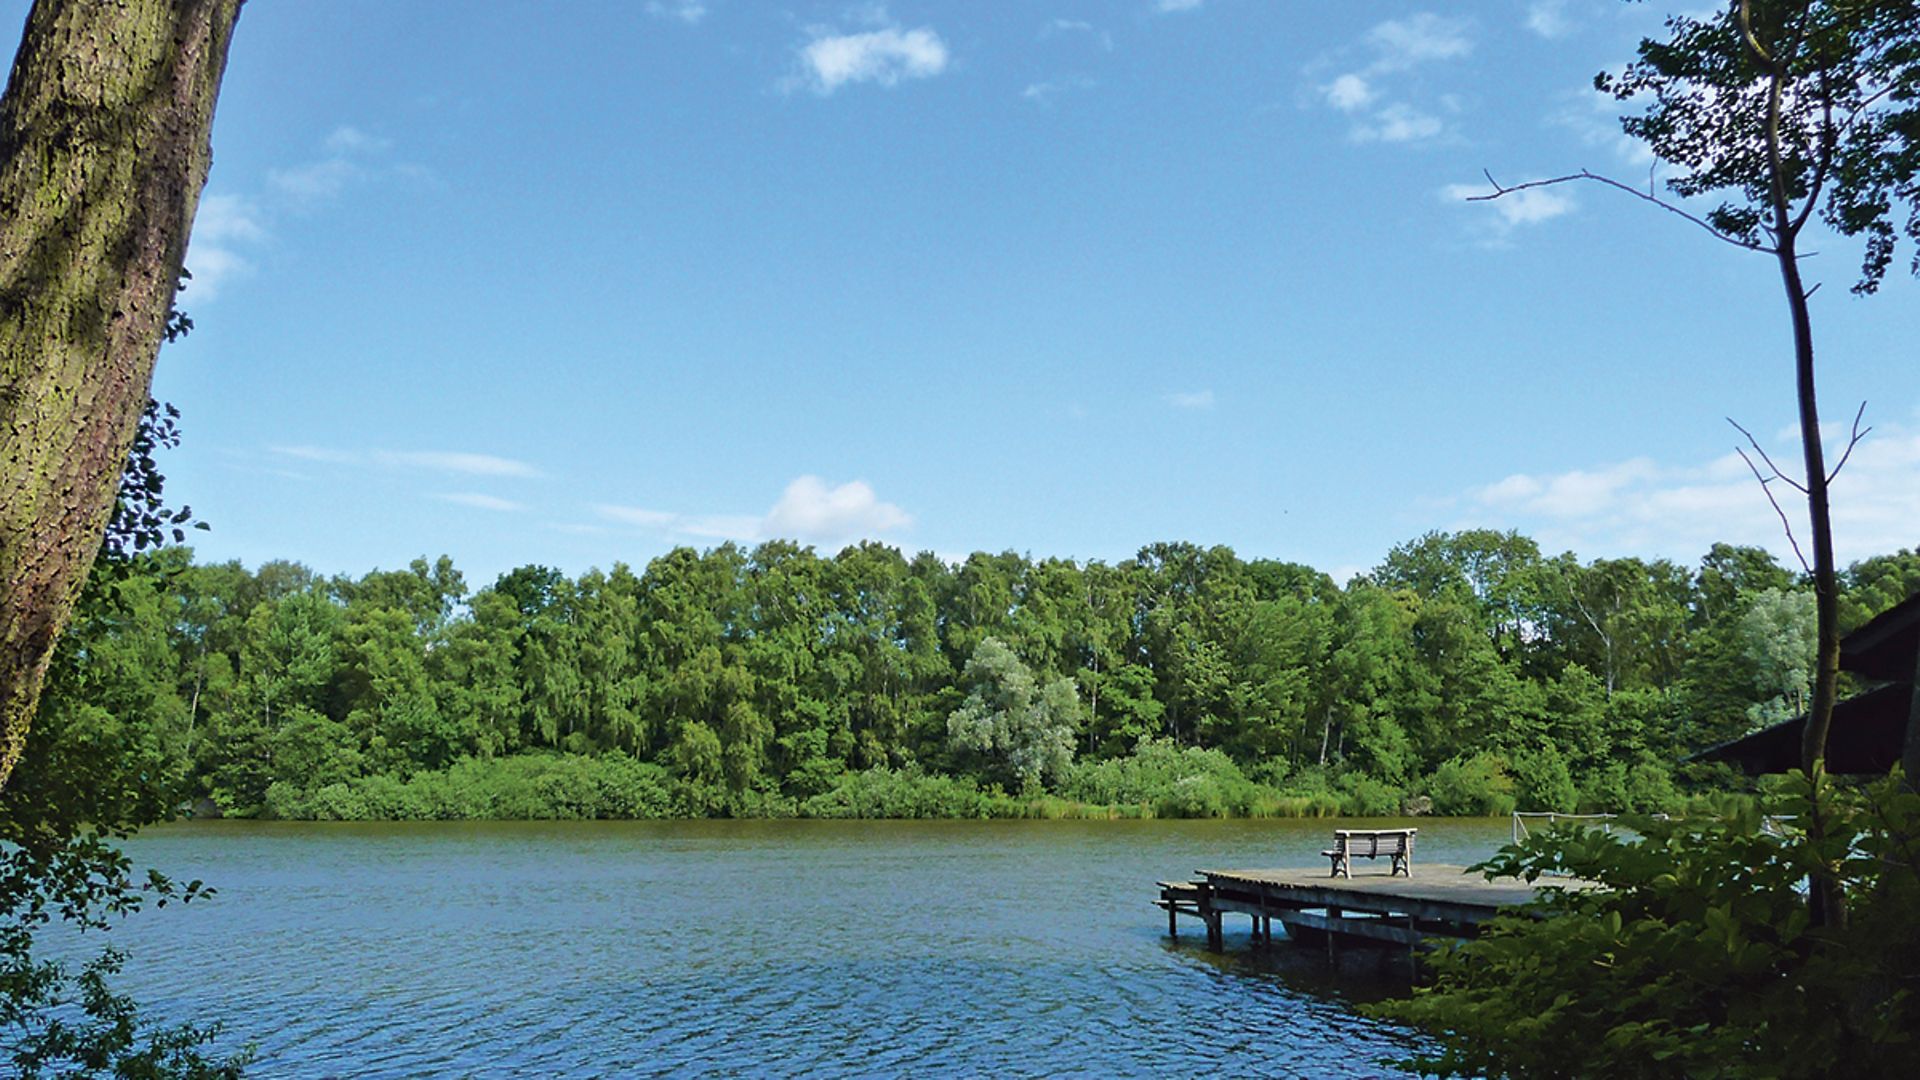 Unter blauem Himmel liegt der Bramfelder See, gesäumt von Bäumen und mit einem Holzanleger.